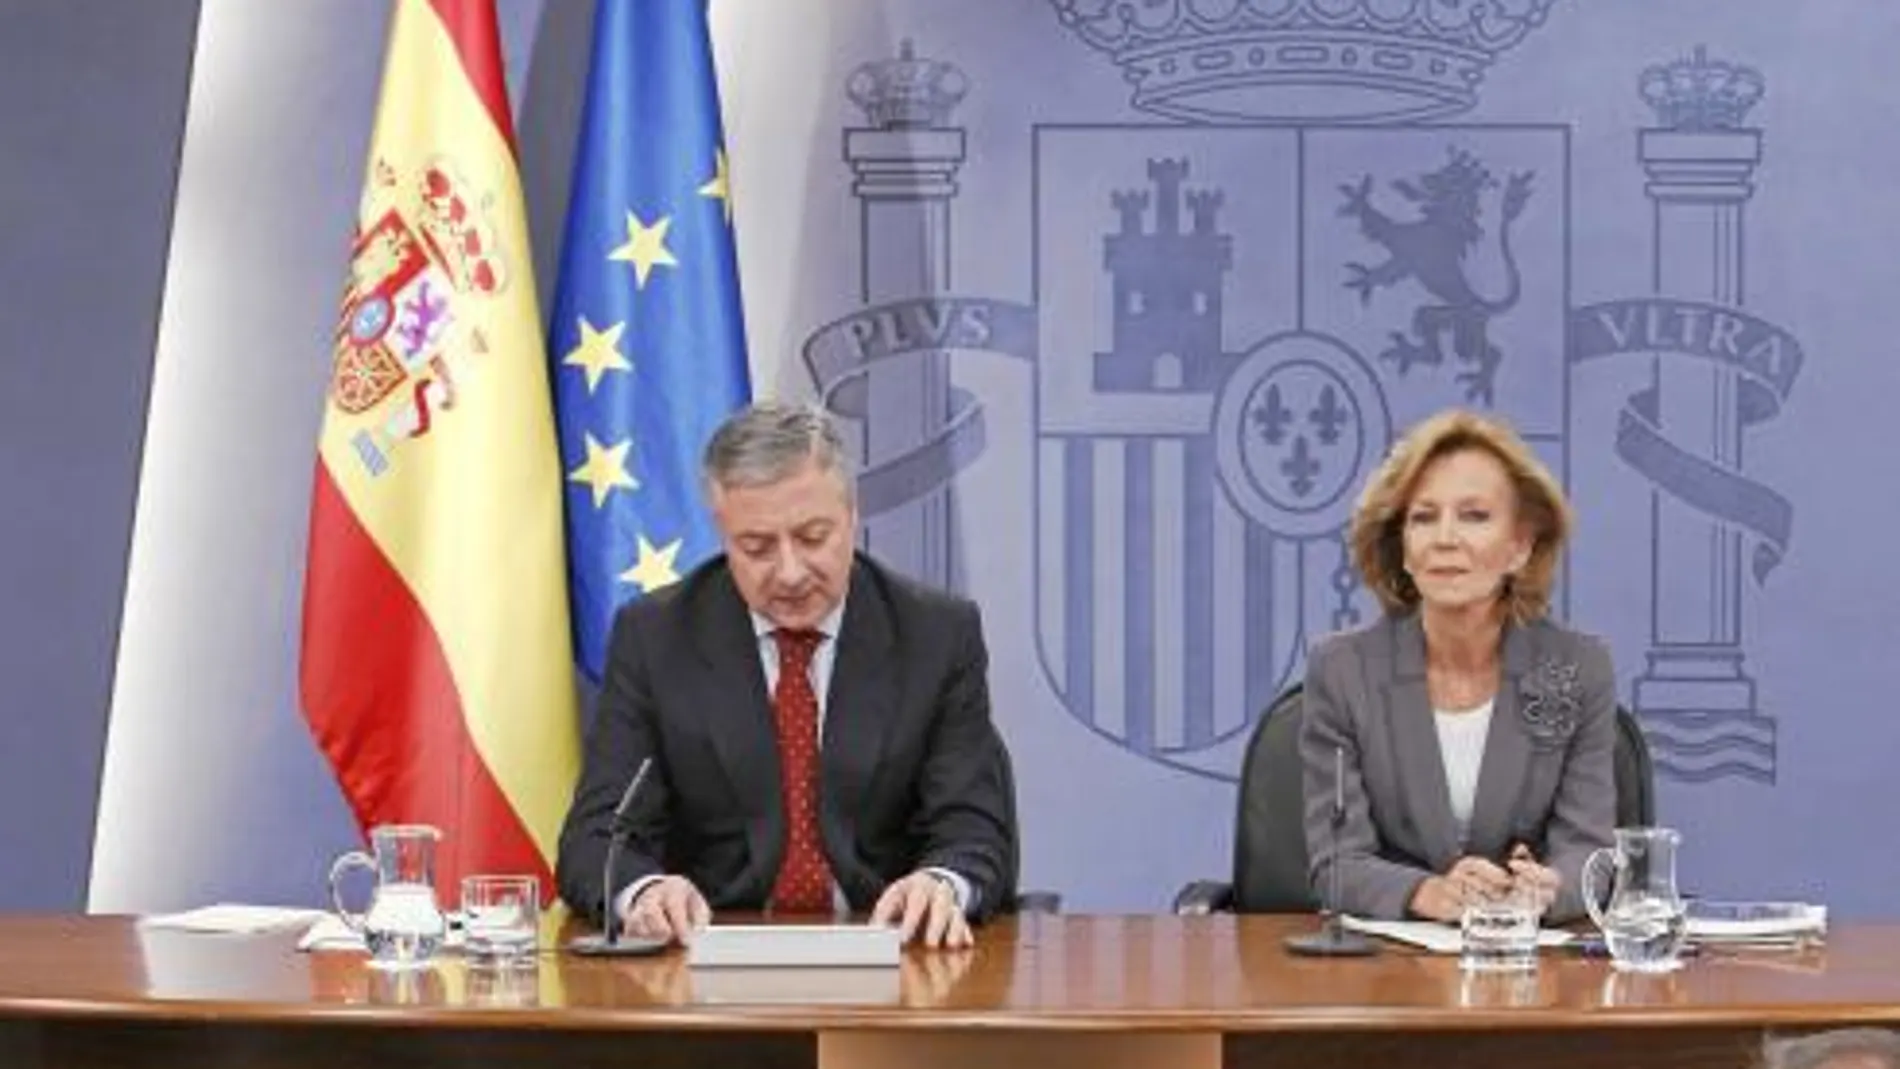 Elena salgado y José Blanco celebraron ayer la última rueda de prensa posterior a un Consejo de Ministros antes de las elecciones